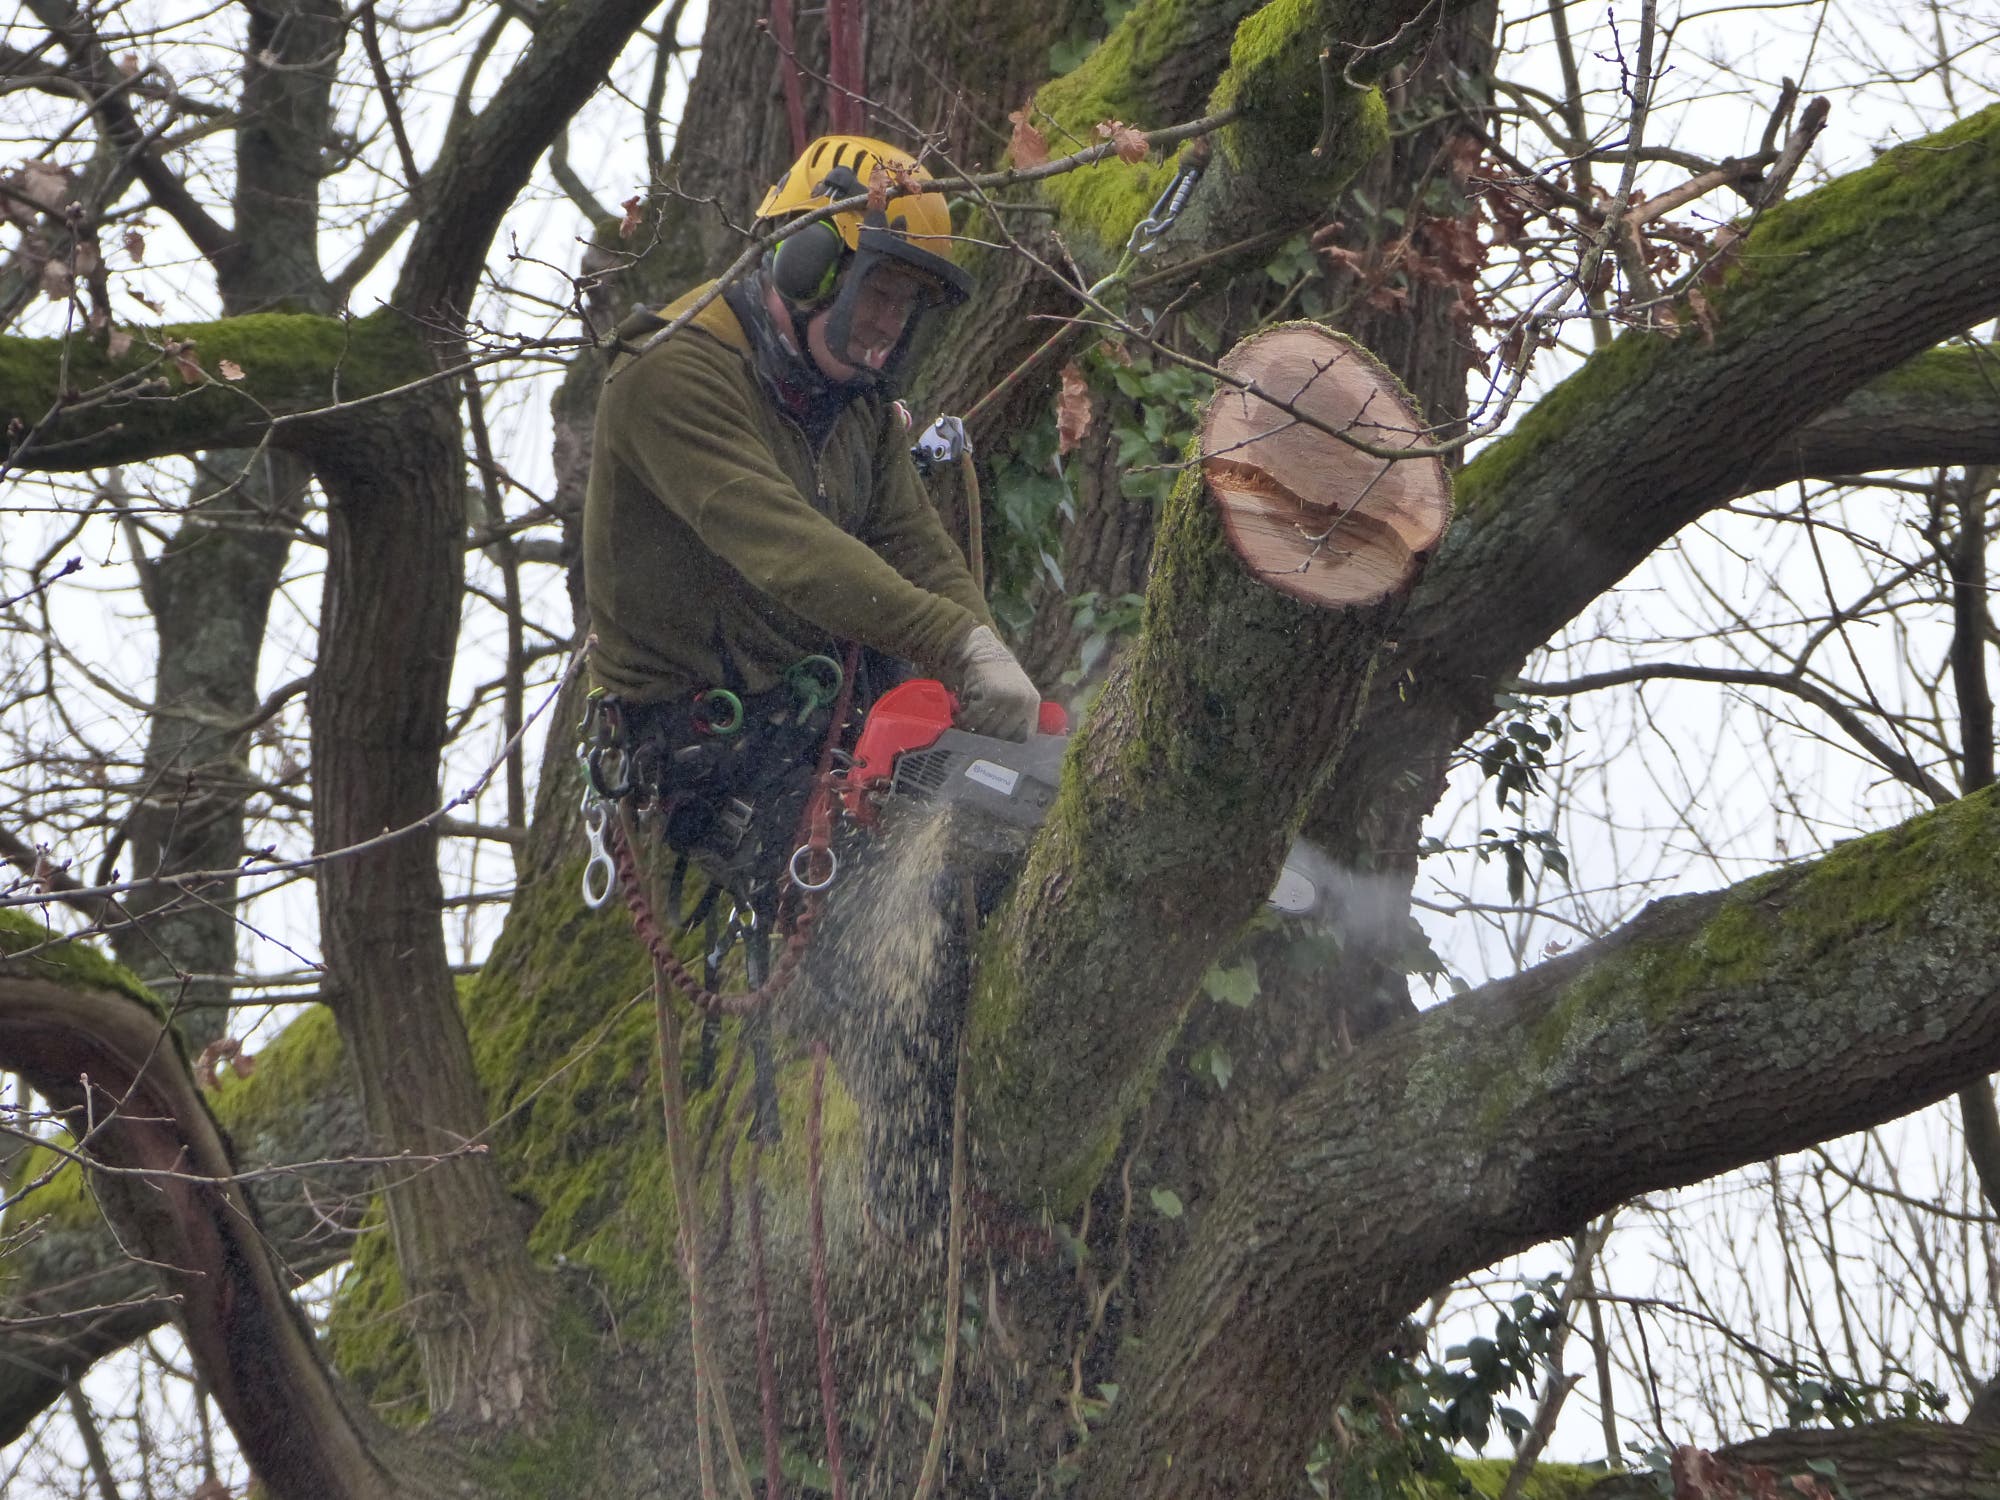 Baumpfleger in Schutzkleidung sägt in einem Baum.